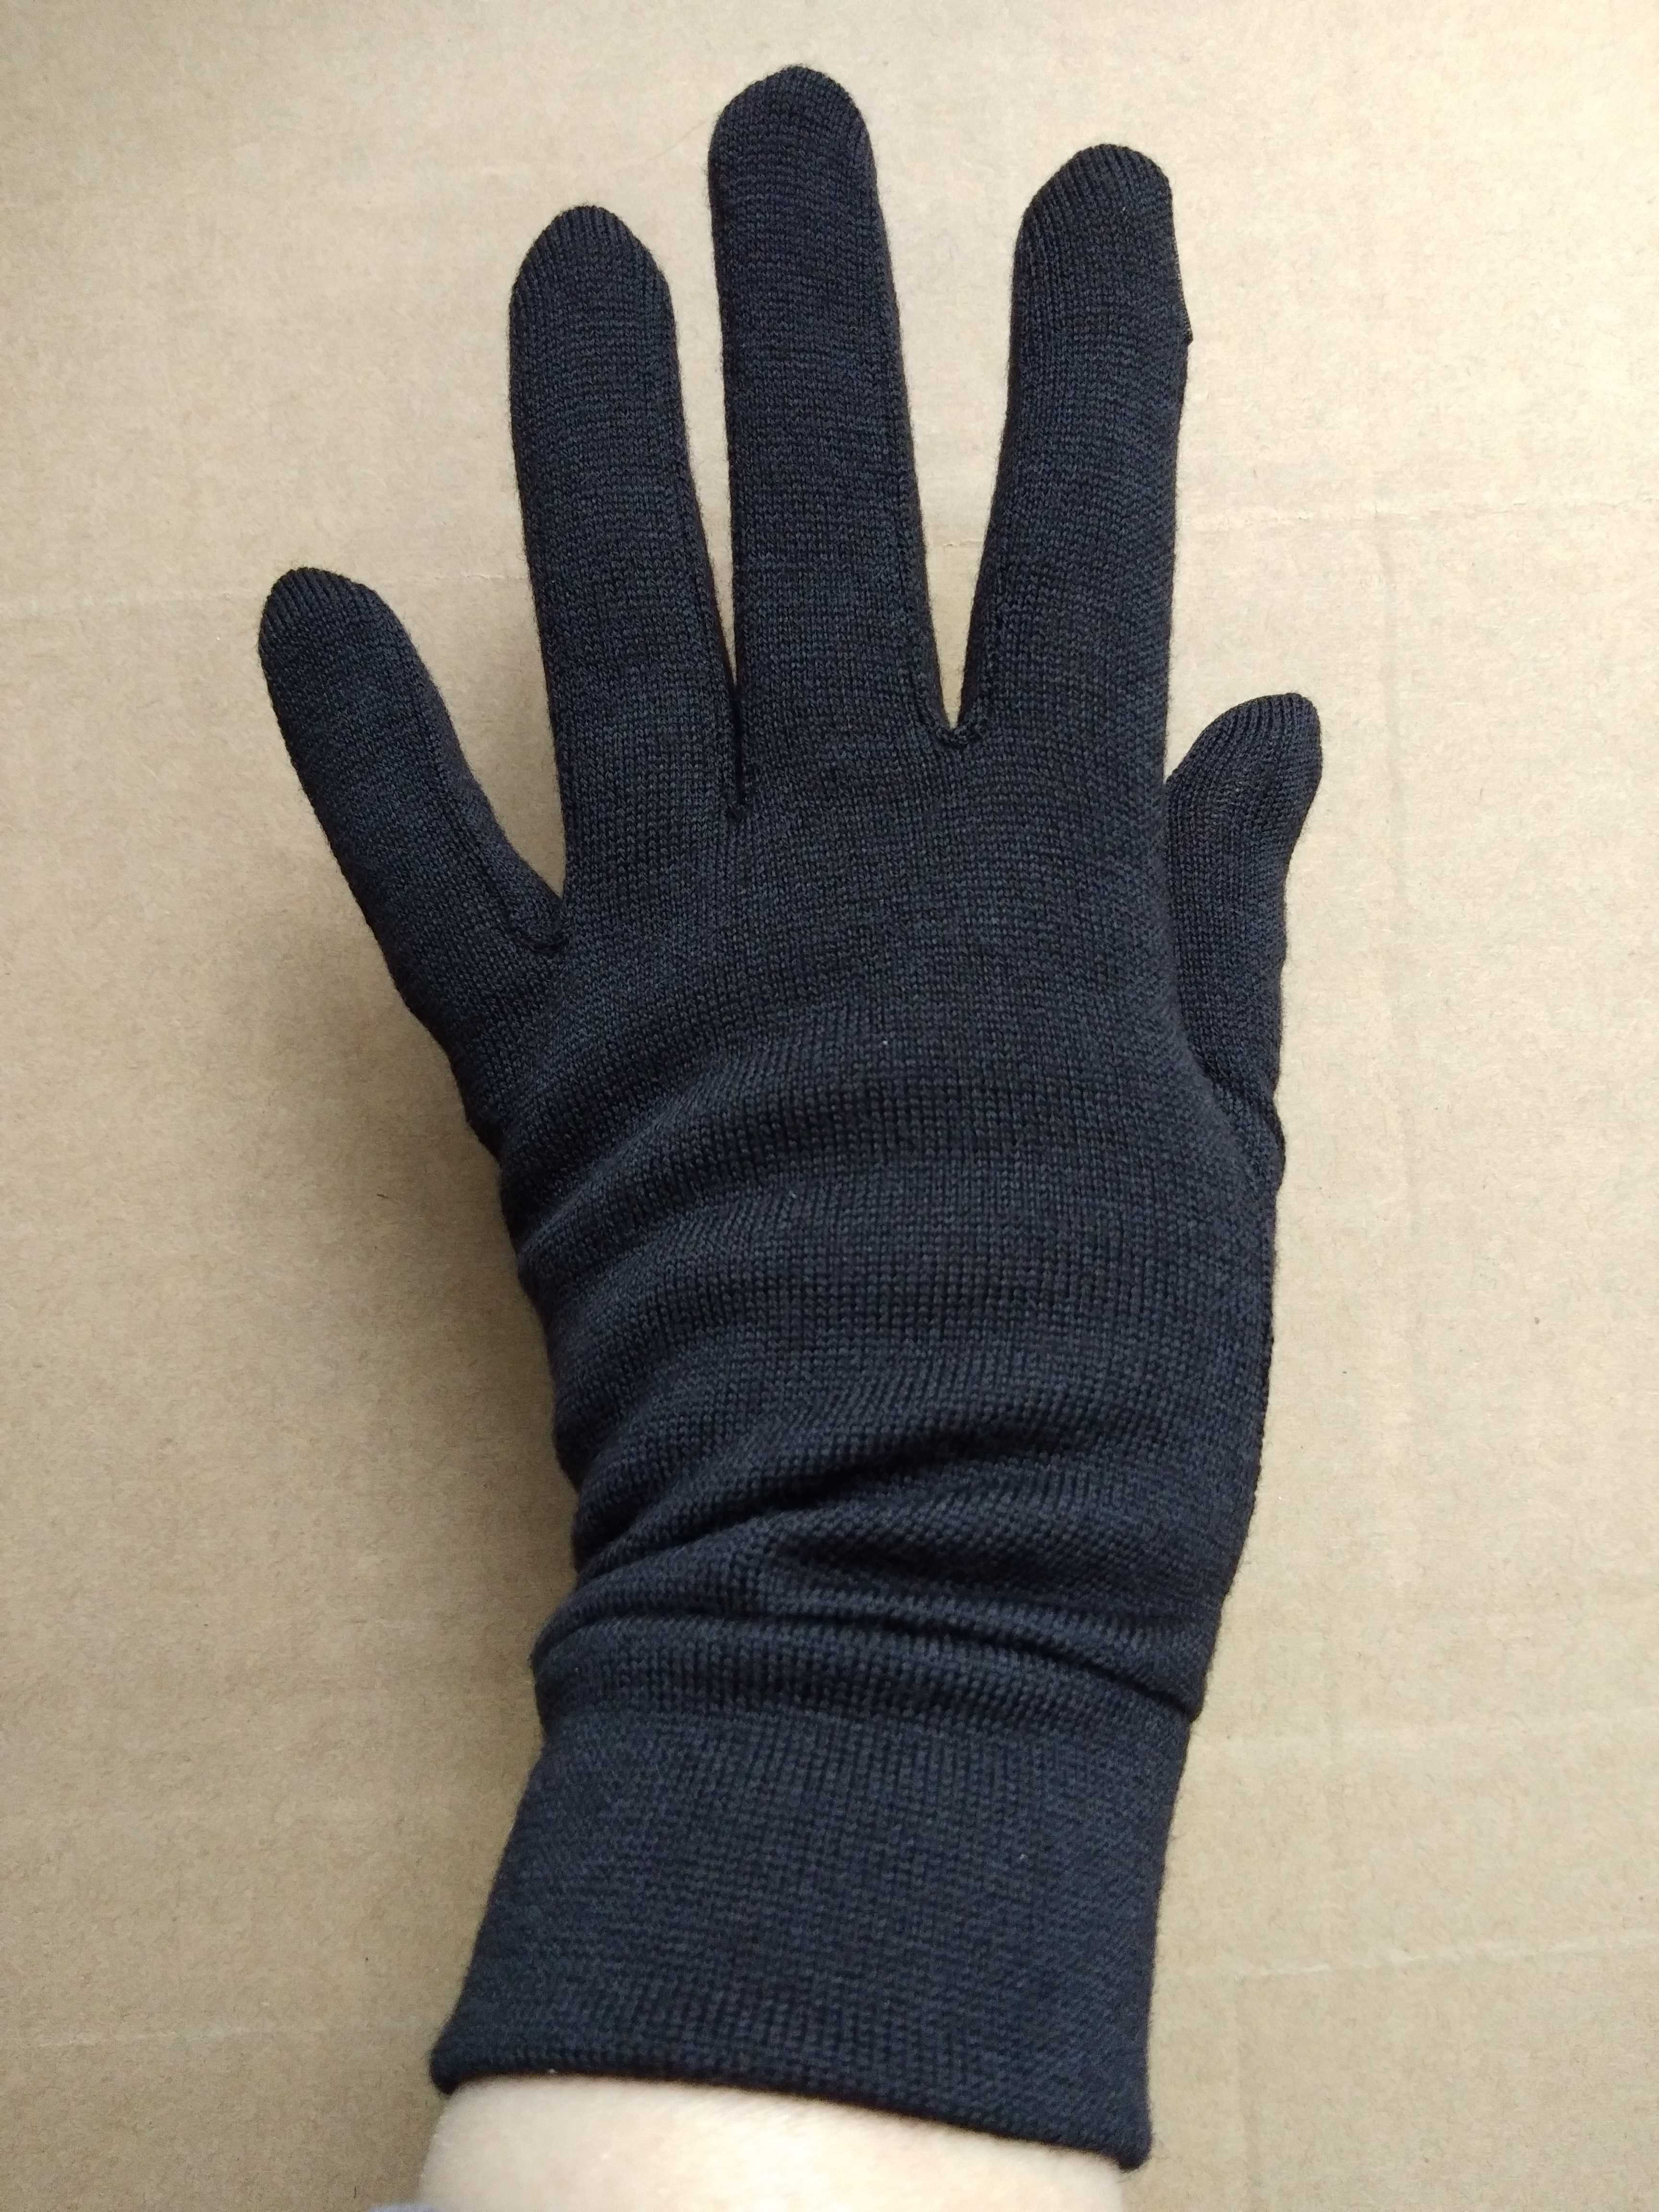 Mænd kvinder merino uld handske liners 100%  merino uld unisex handsker - berøringsskærm kompatibel varmere vindtæt størrelse xs-xl